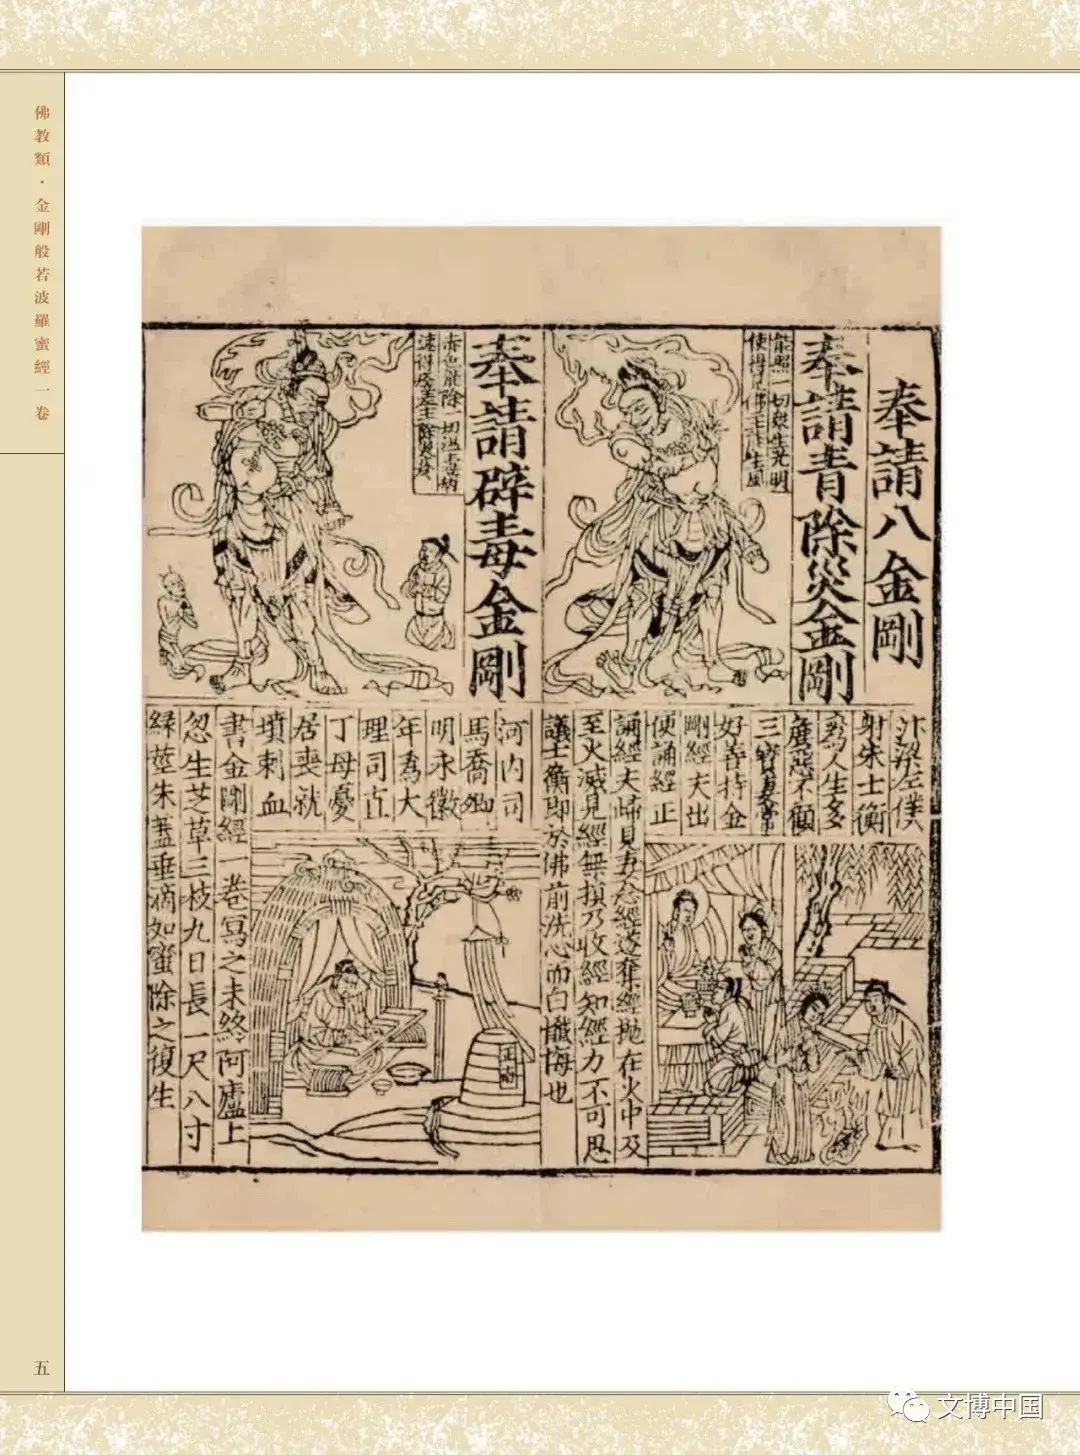 编者说 |《欧洲冯氏藏中国古代版画丛刊》一图载千言